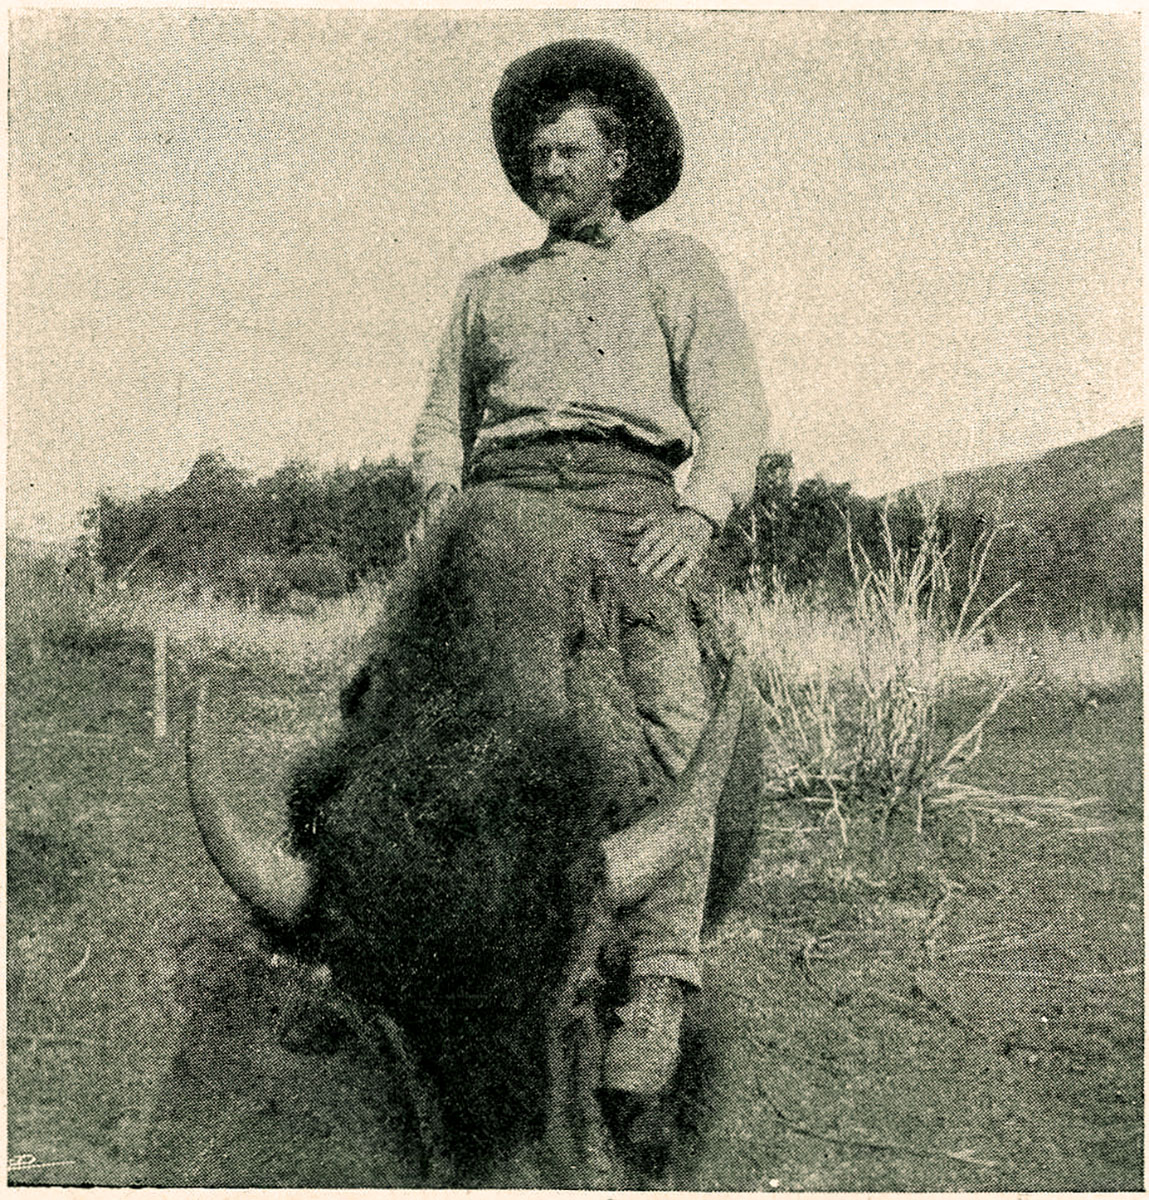 Dick Rock riding his pet buffalo “Lindsay.”